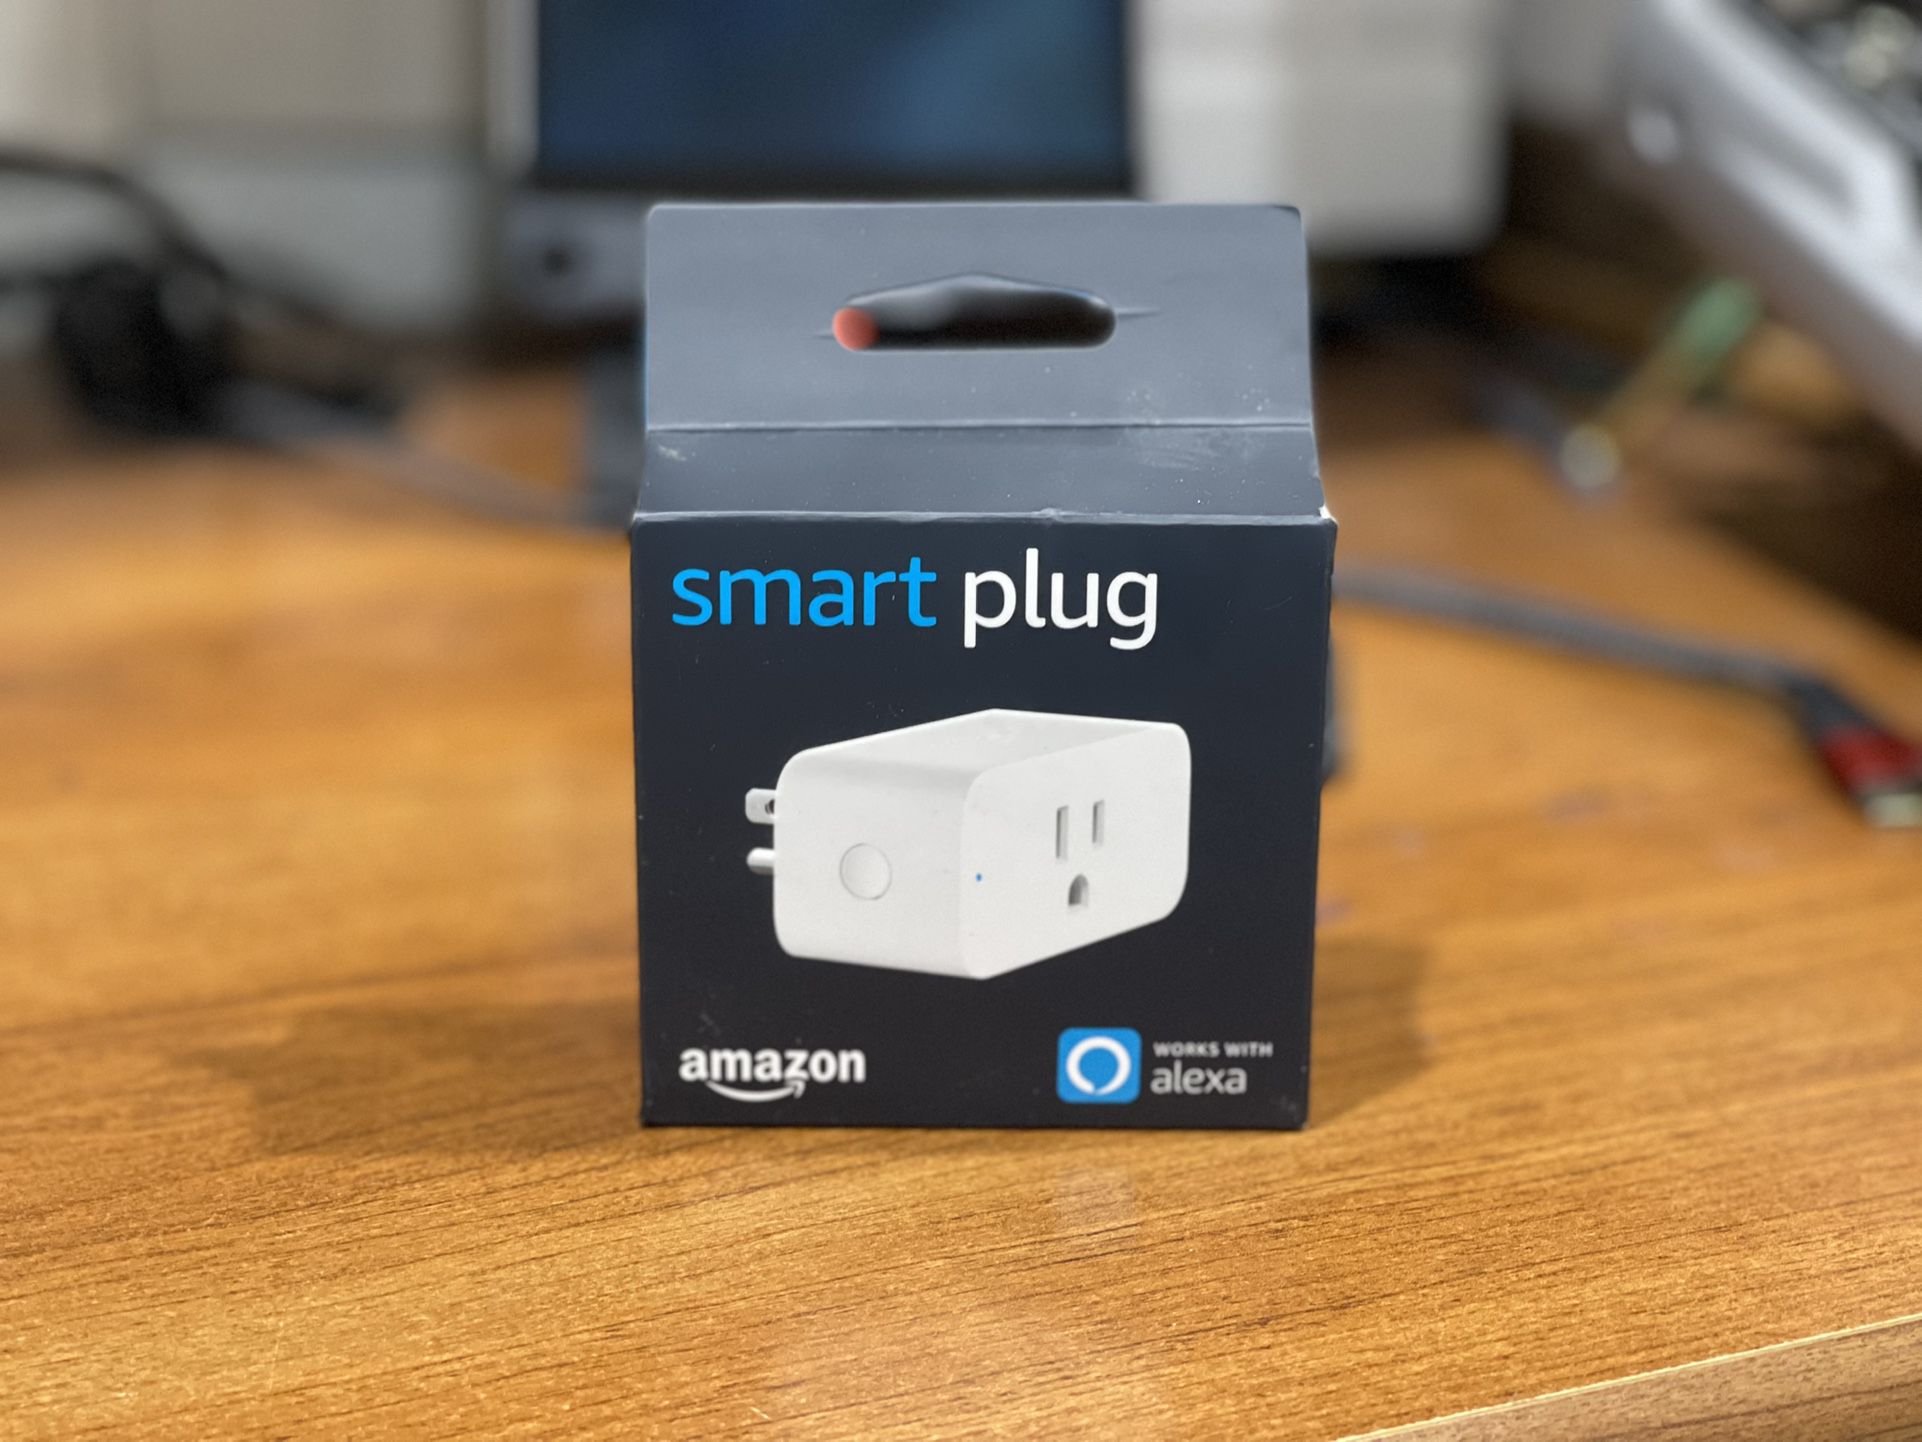 Amazon Smart Plug - Works With alexa